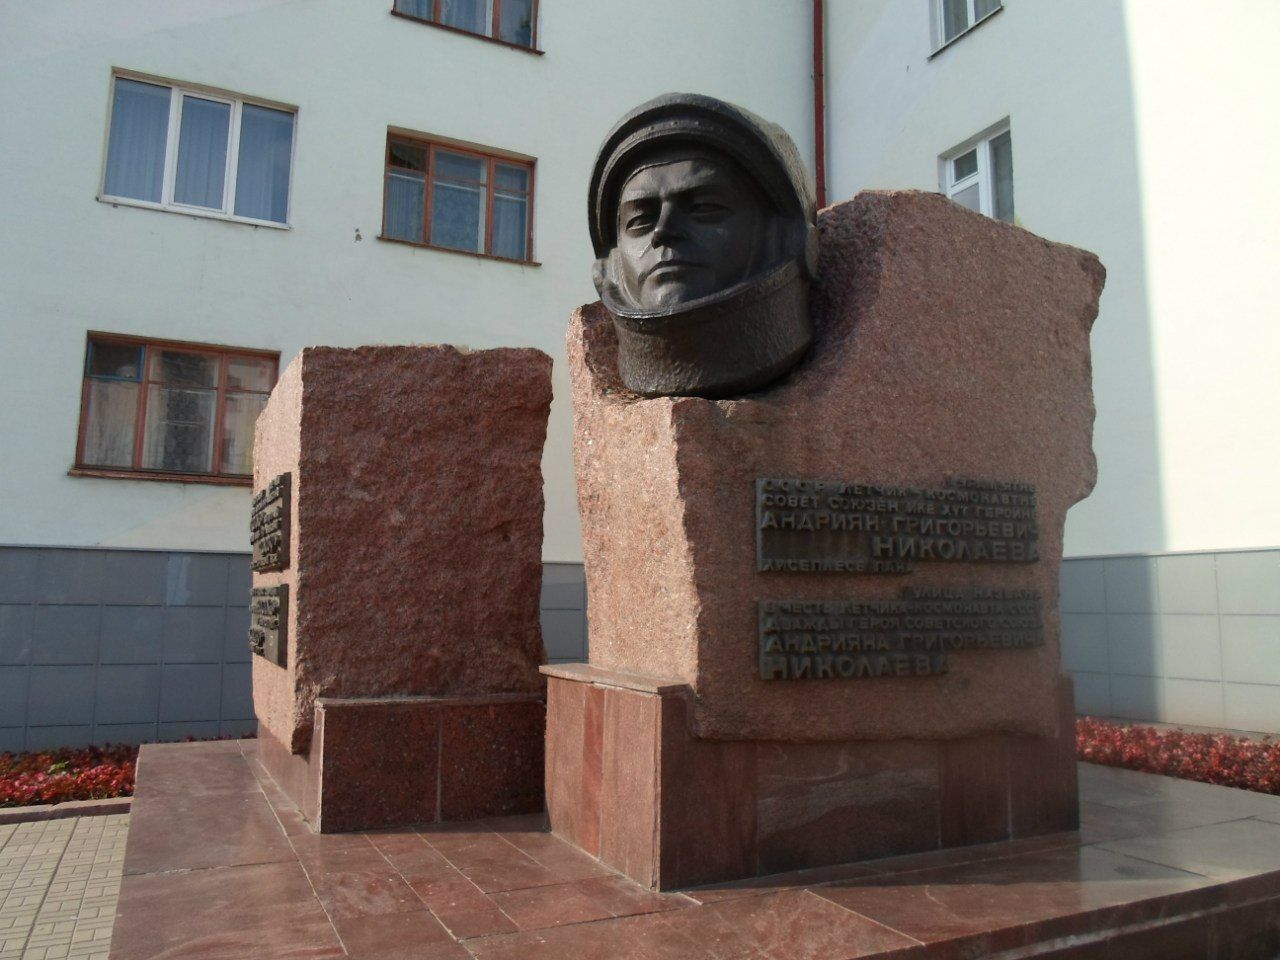 Памятник космонавту Андрияну Николаеву в г. Чебоксары